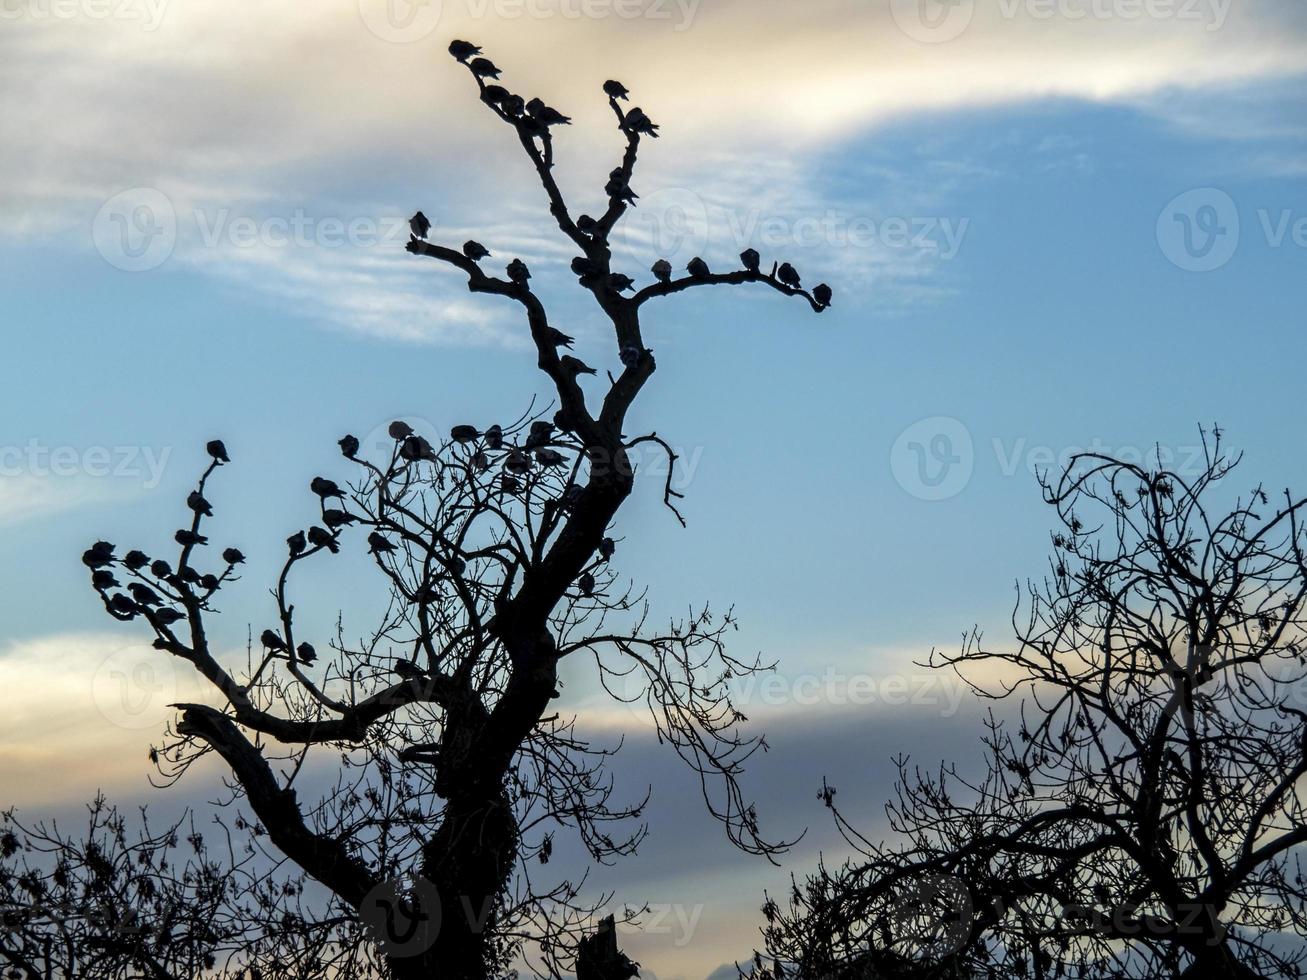 pombos empoleirados nos galhos nus de uma velha árvore foto